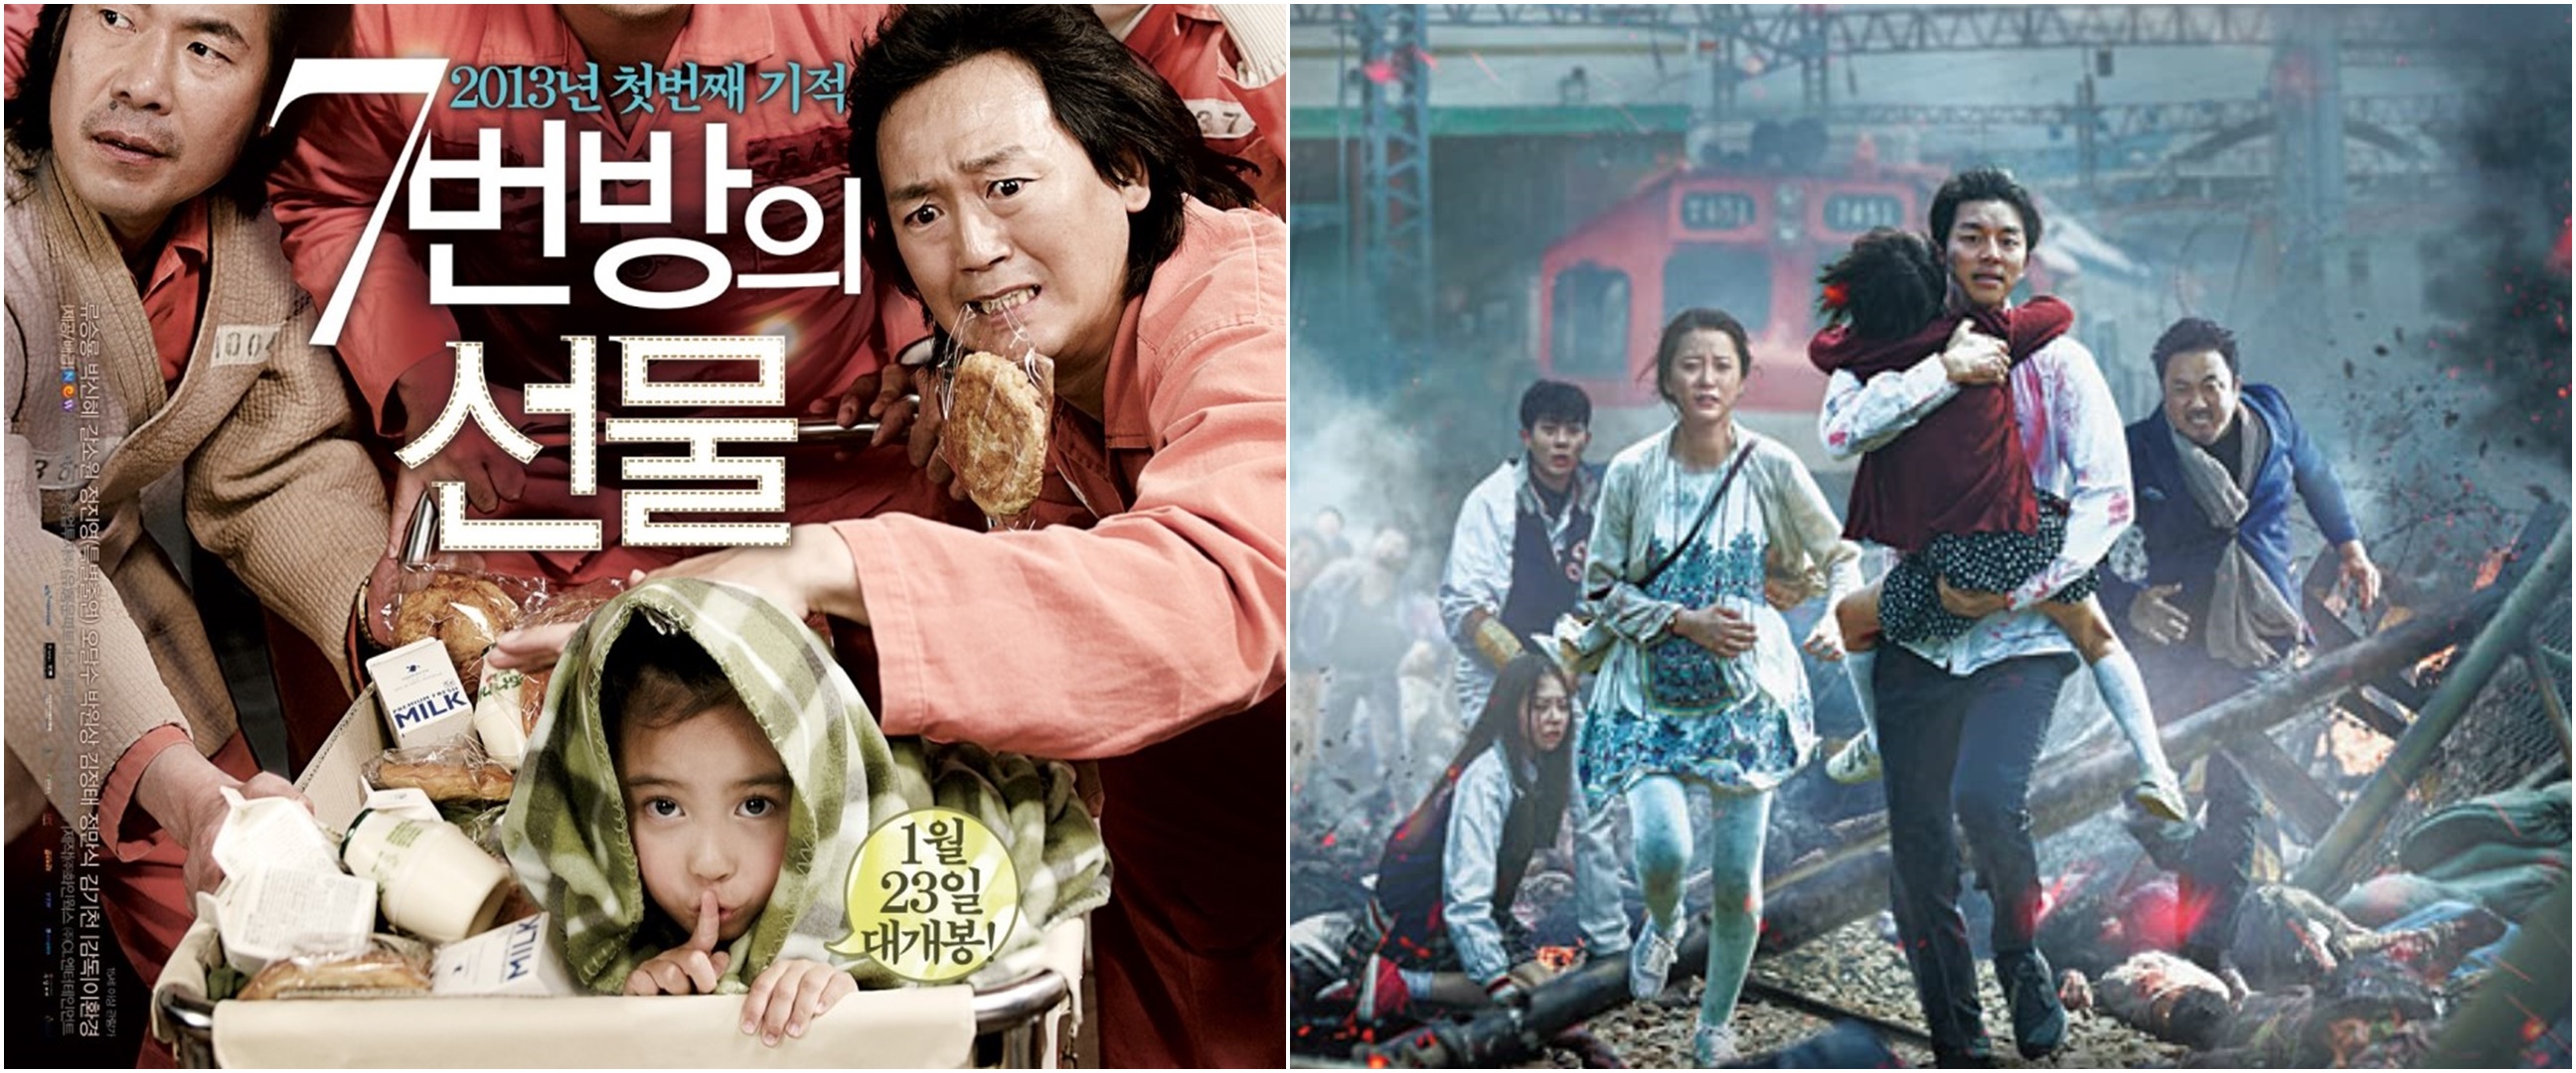 11 Film Korea terbaik versi Mydramalist, banyak judul populer